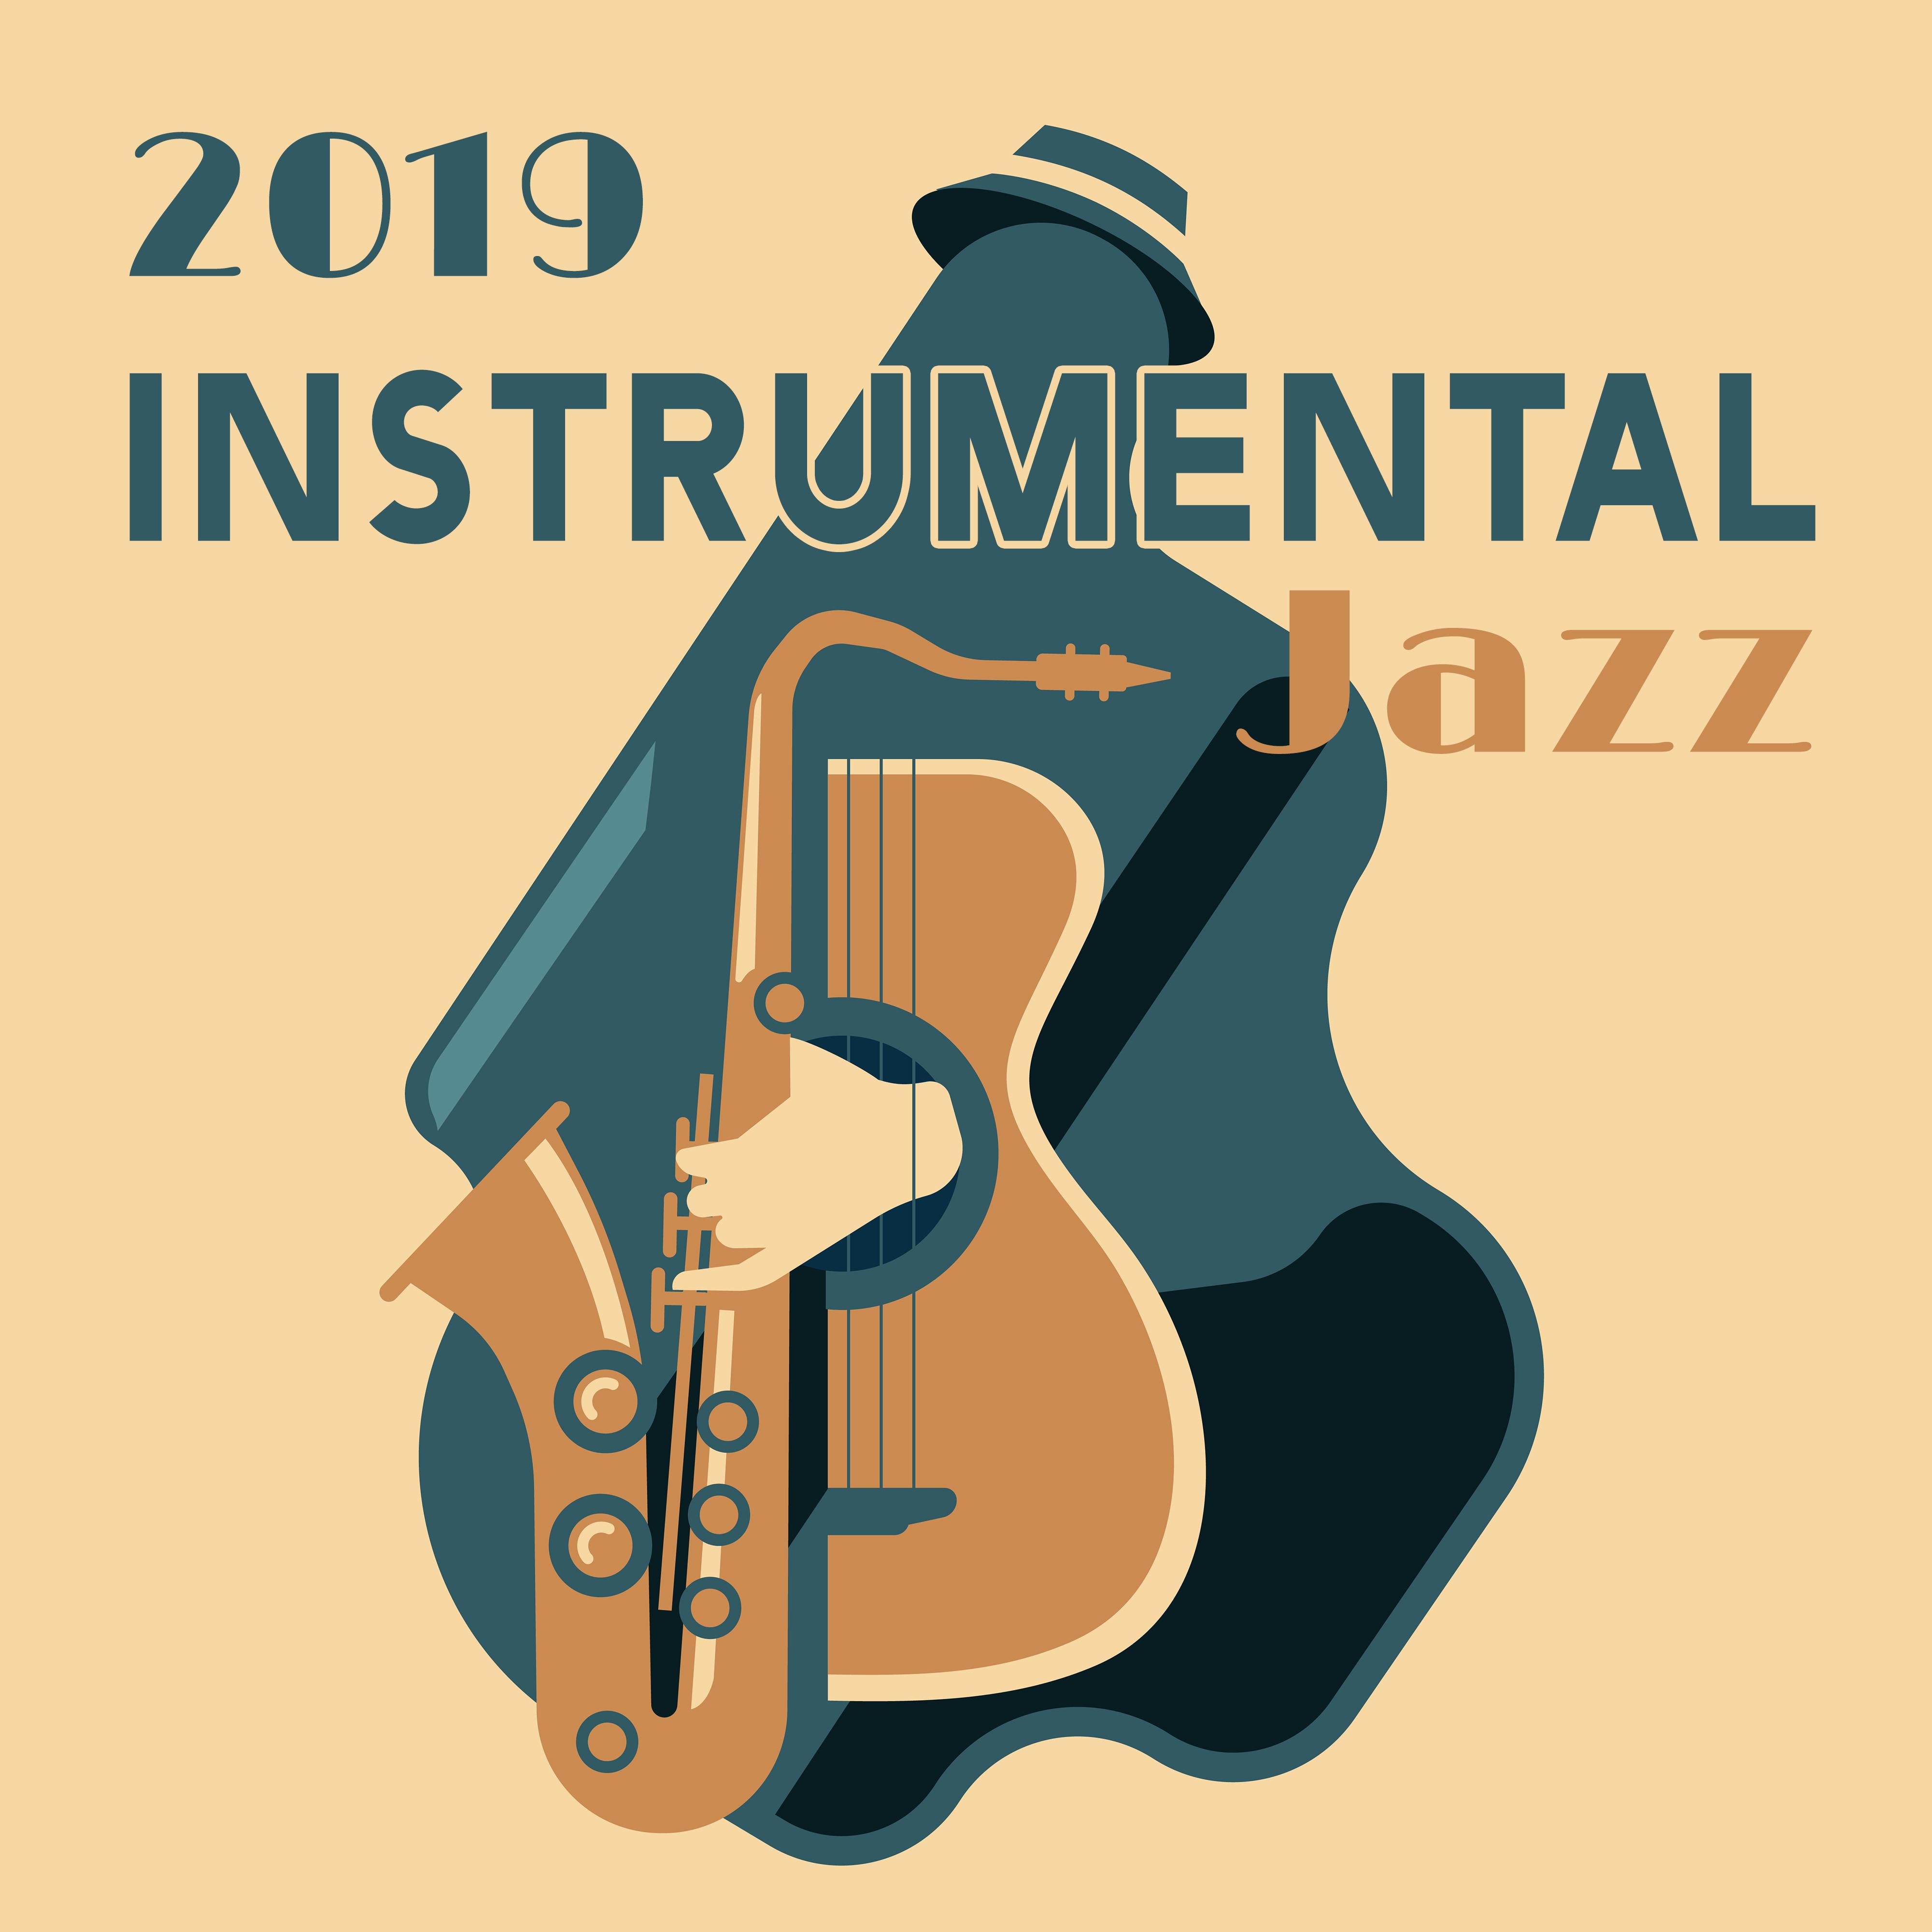 2019 Instrumental Jazz - 15 Jazz Melodies for Relaxation